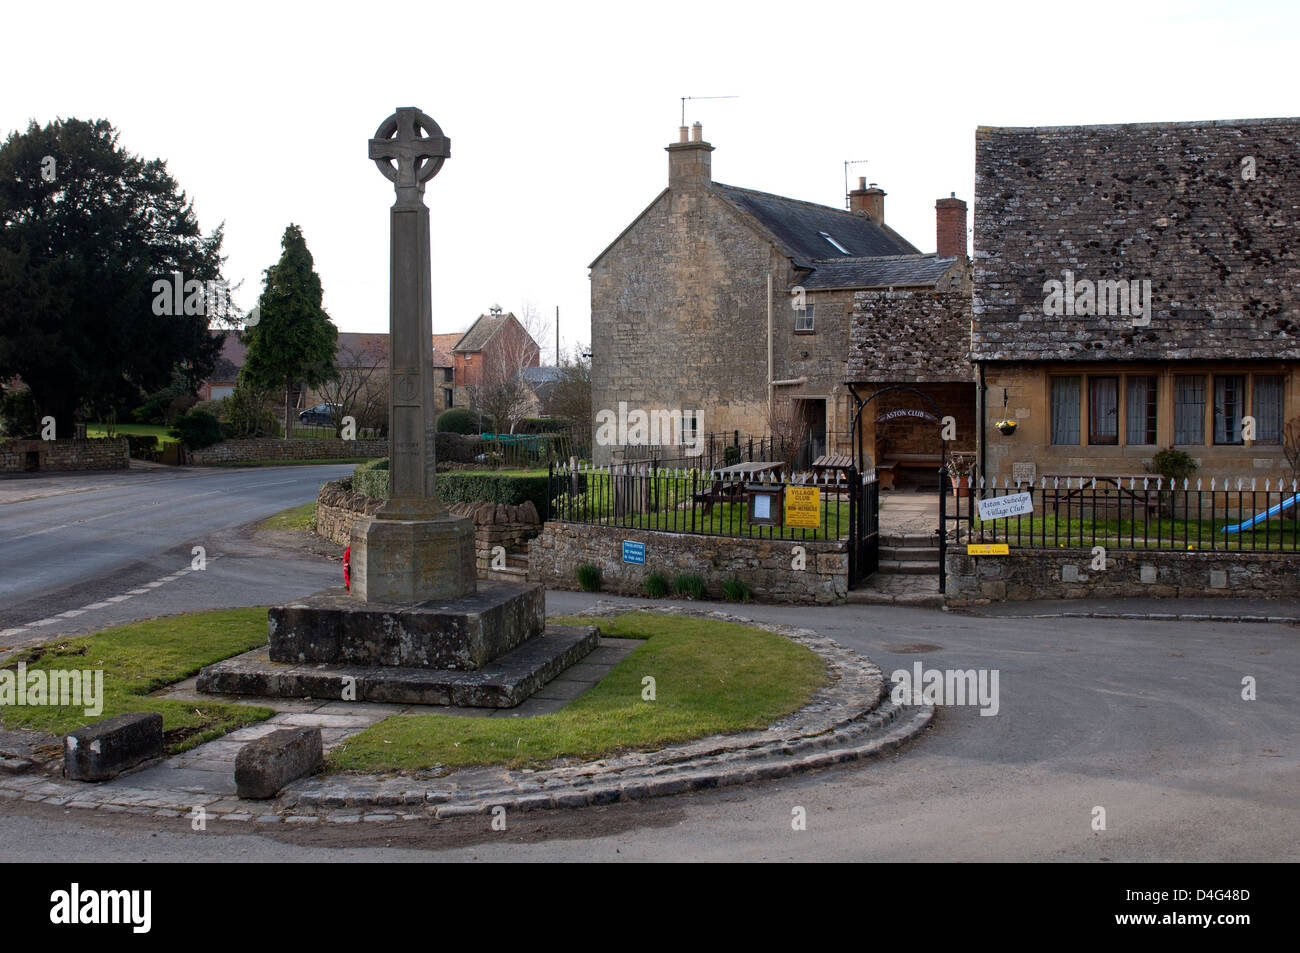 Aston Subedge village, Gloucestershire, England, UK Stock Photo